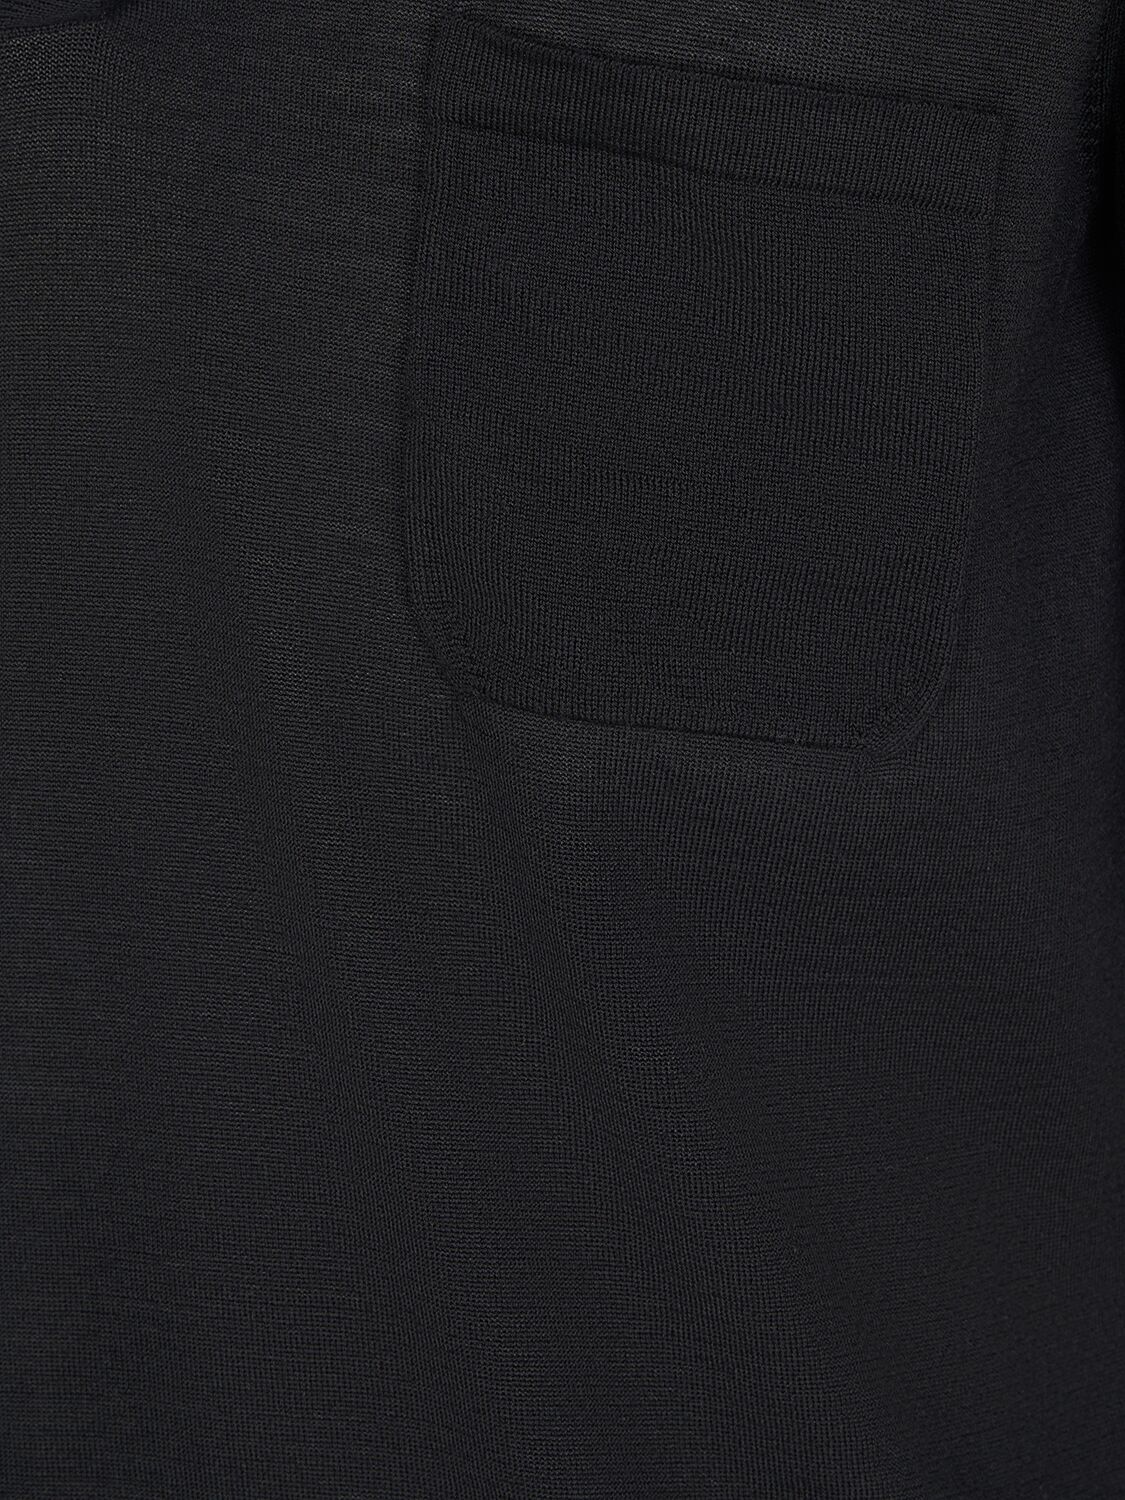 Shop Saint Laurent Cassandre Wool Polo Shirt In Black